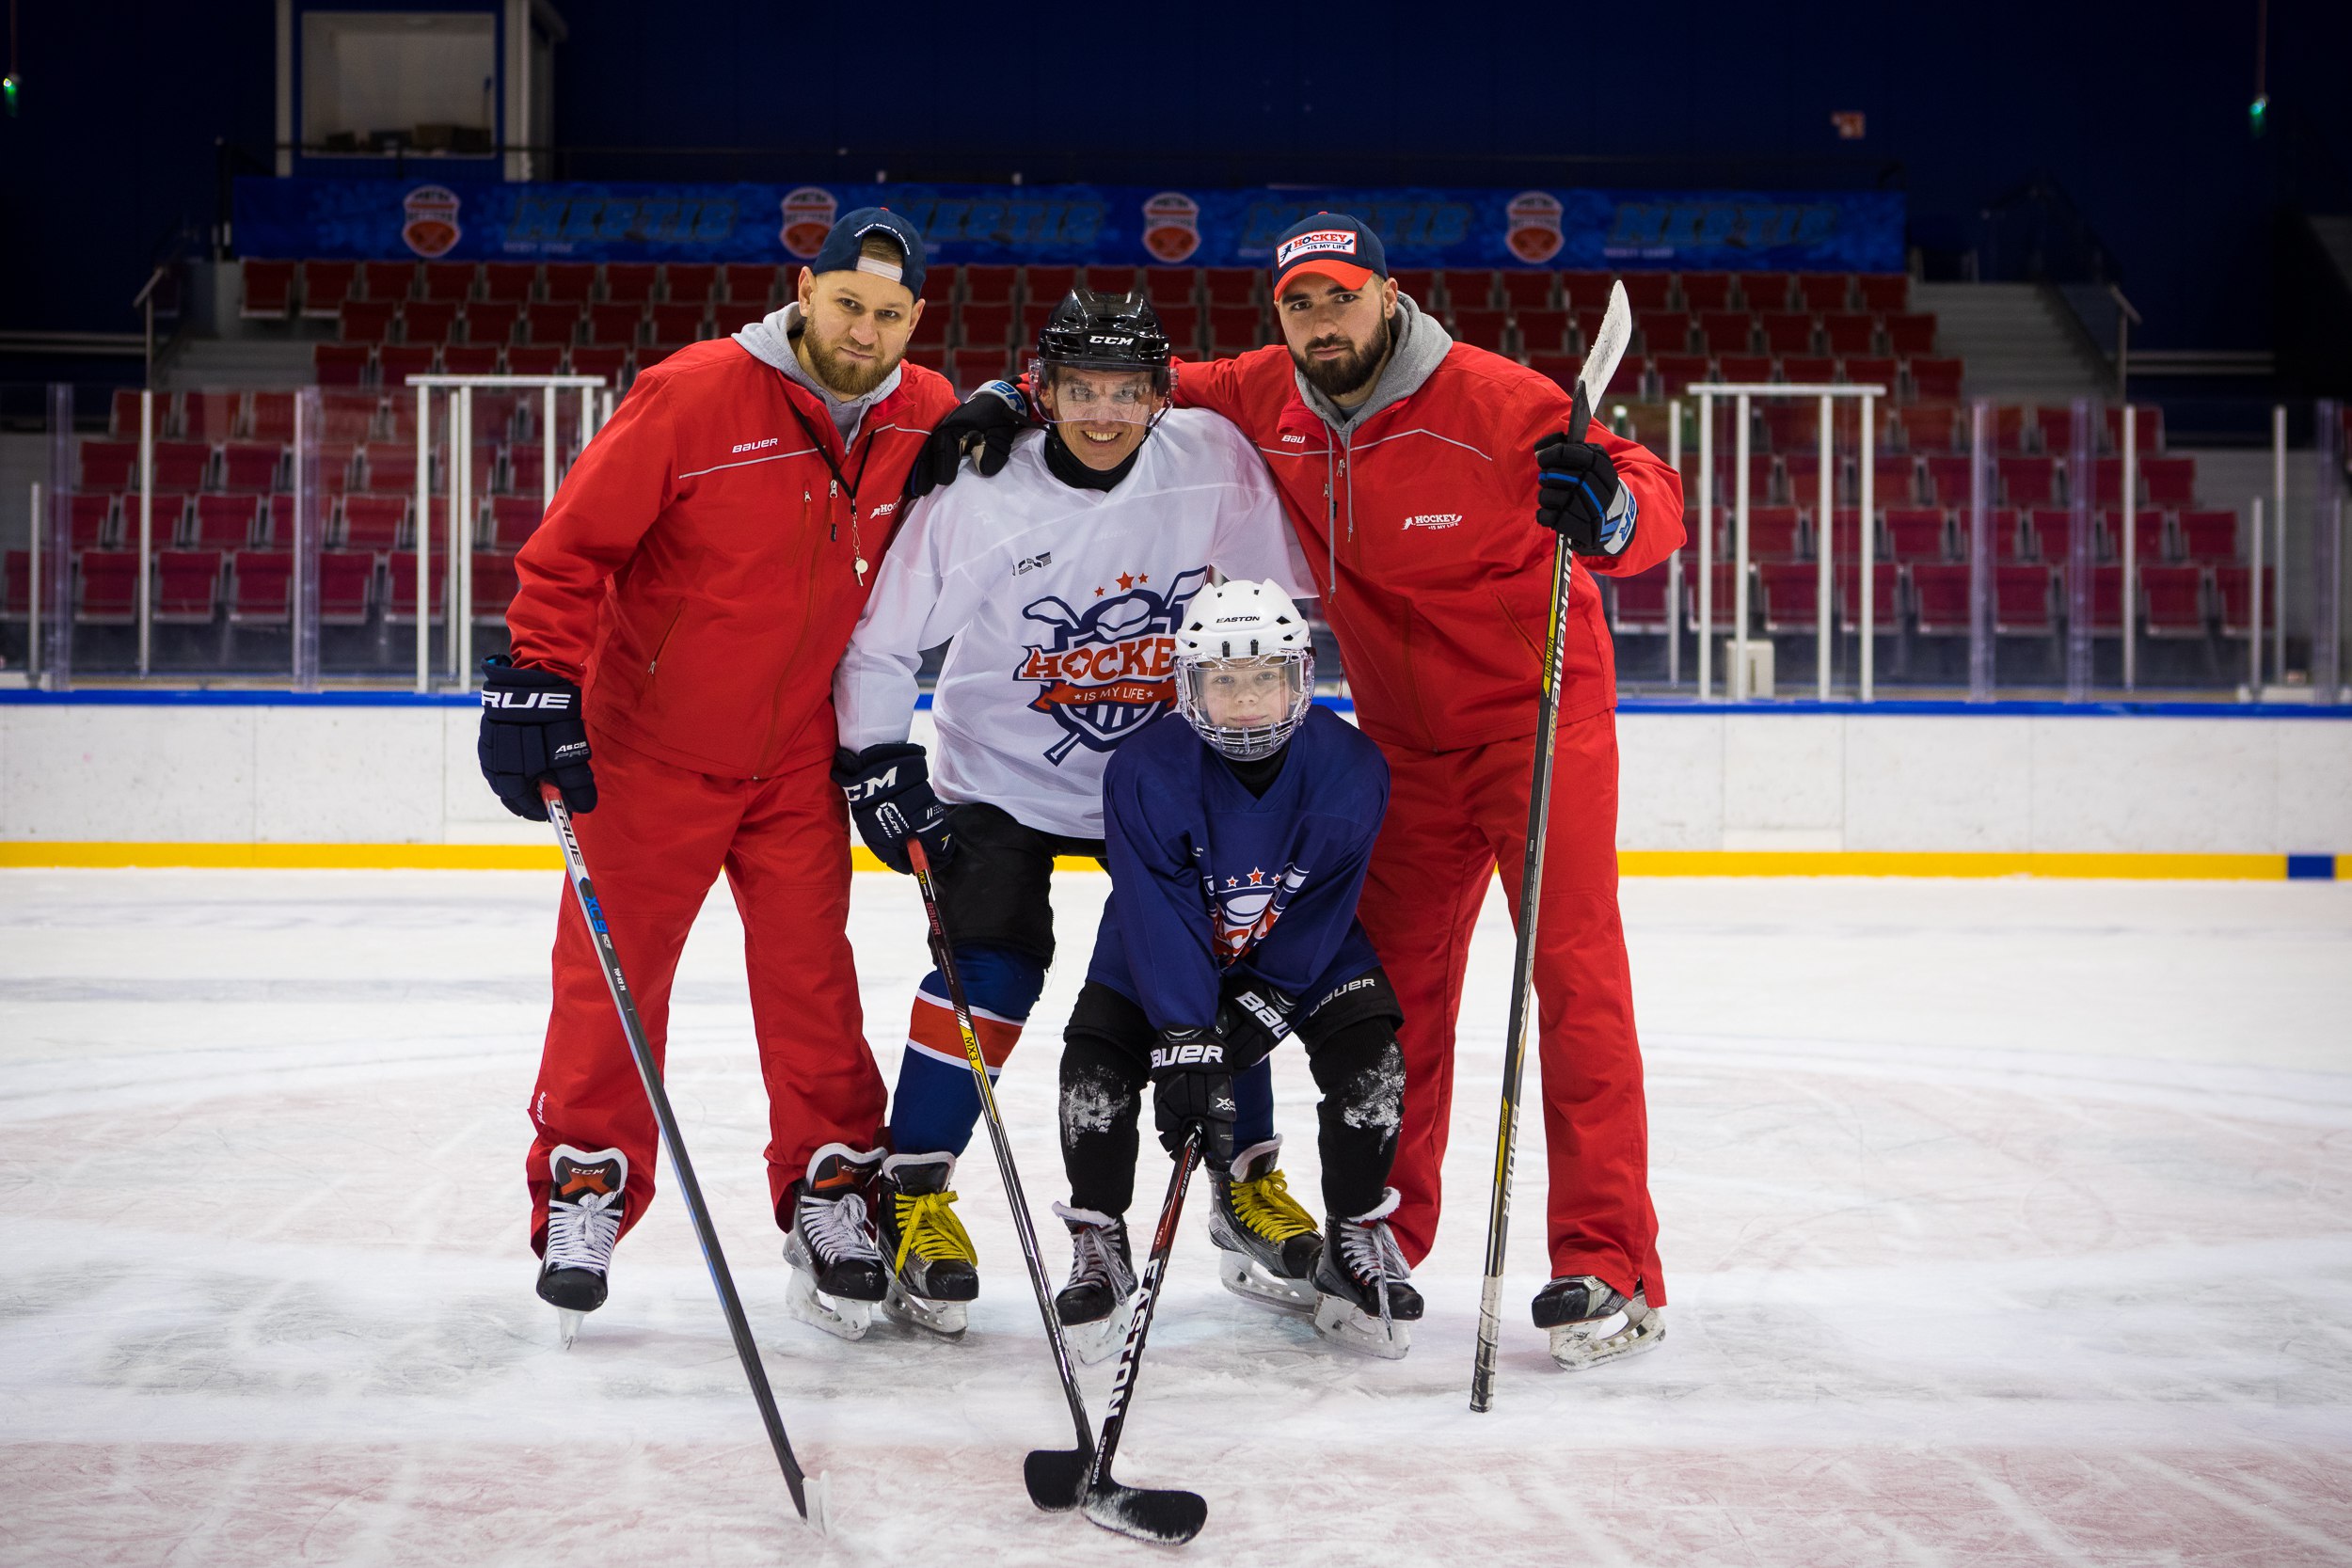 «Hockey is my life» – Детский лагерь в Финляндии, фото 5